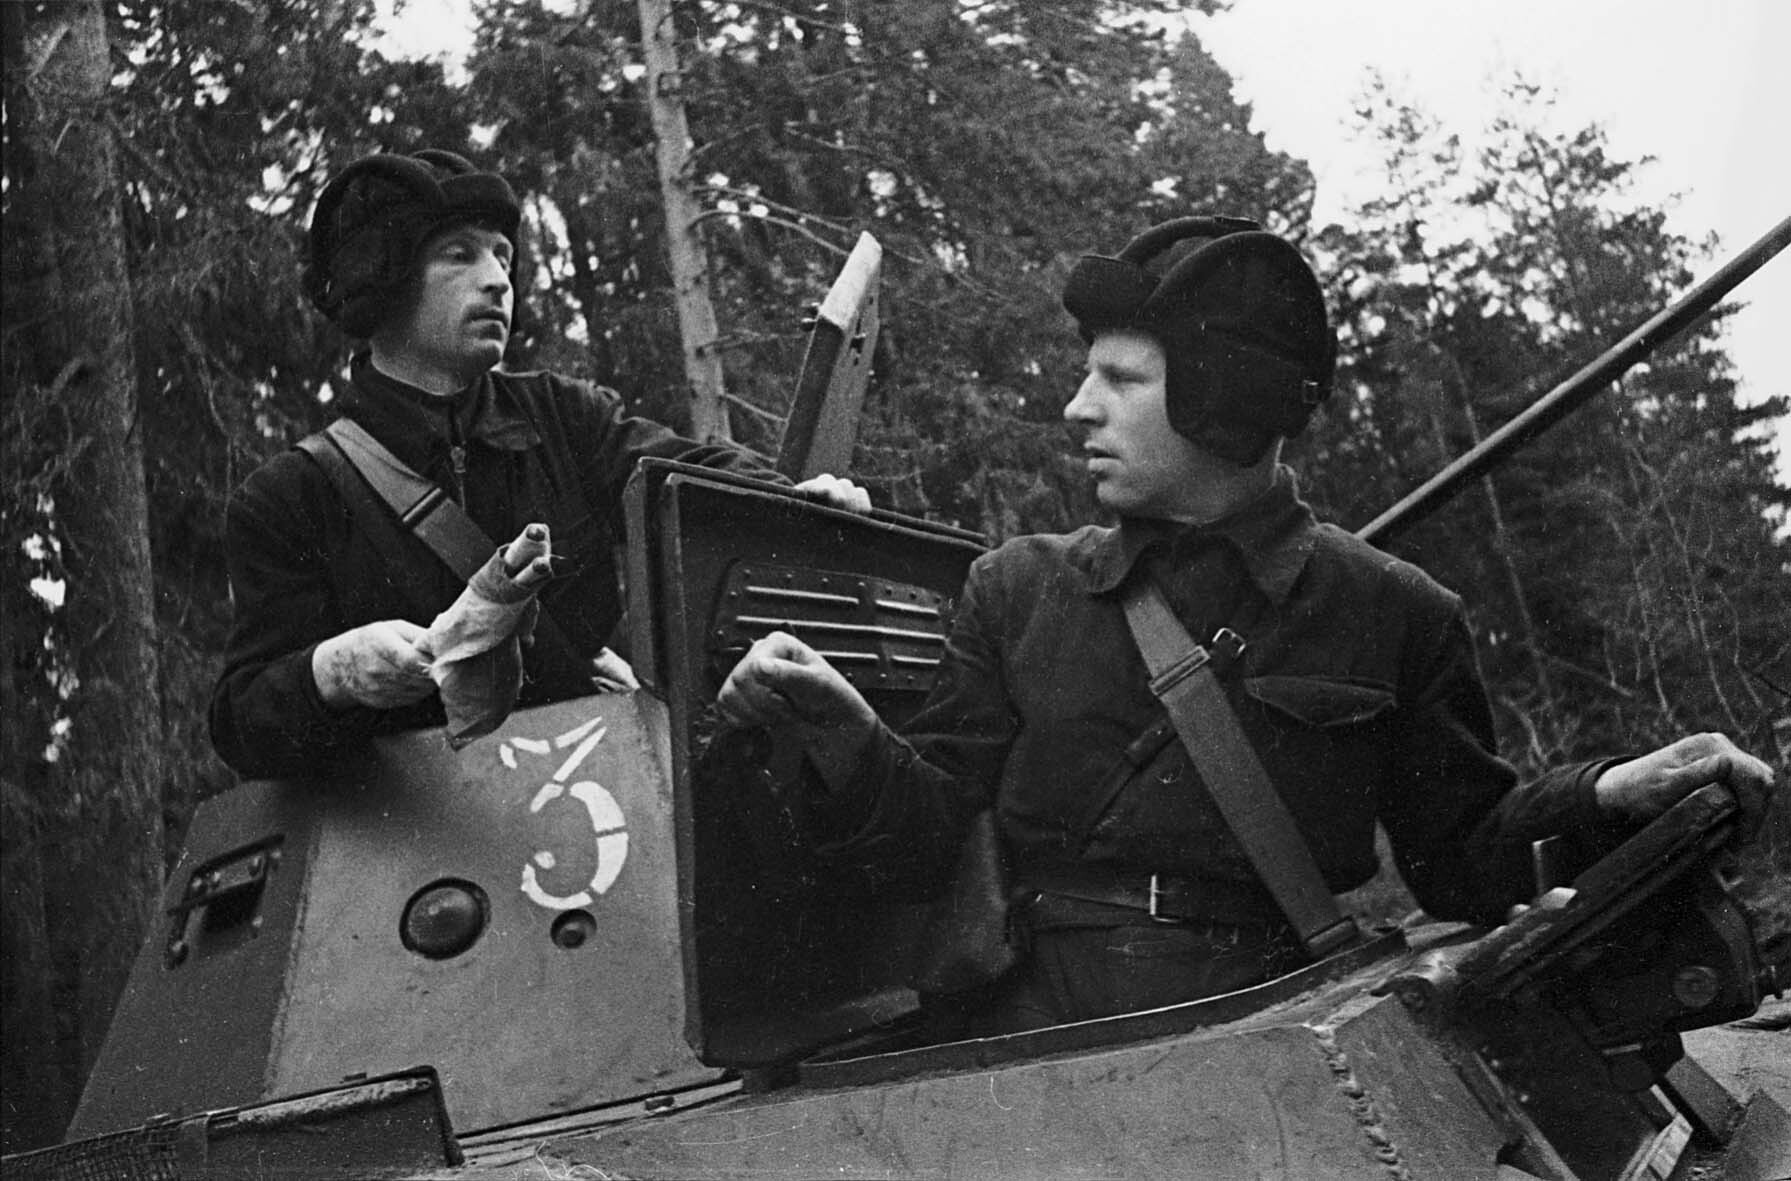 Fotografie: Panzerkommandeur und Politoffizier, Kalininer Front, 12. Mai 1942 (Museum Berlin-Karlshorst RR-P)